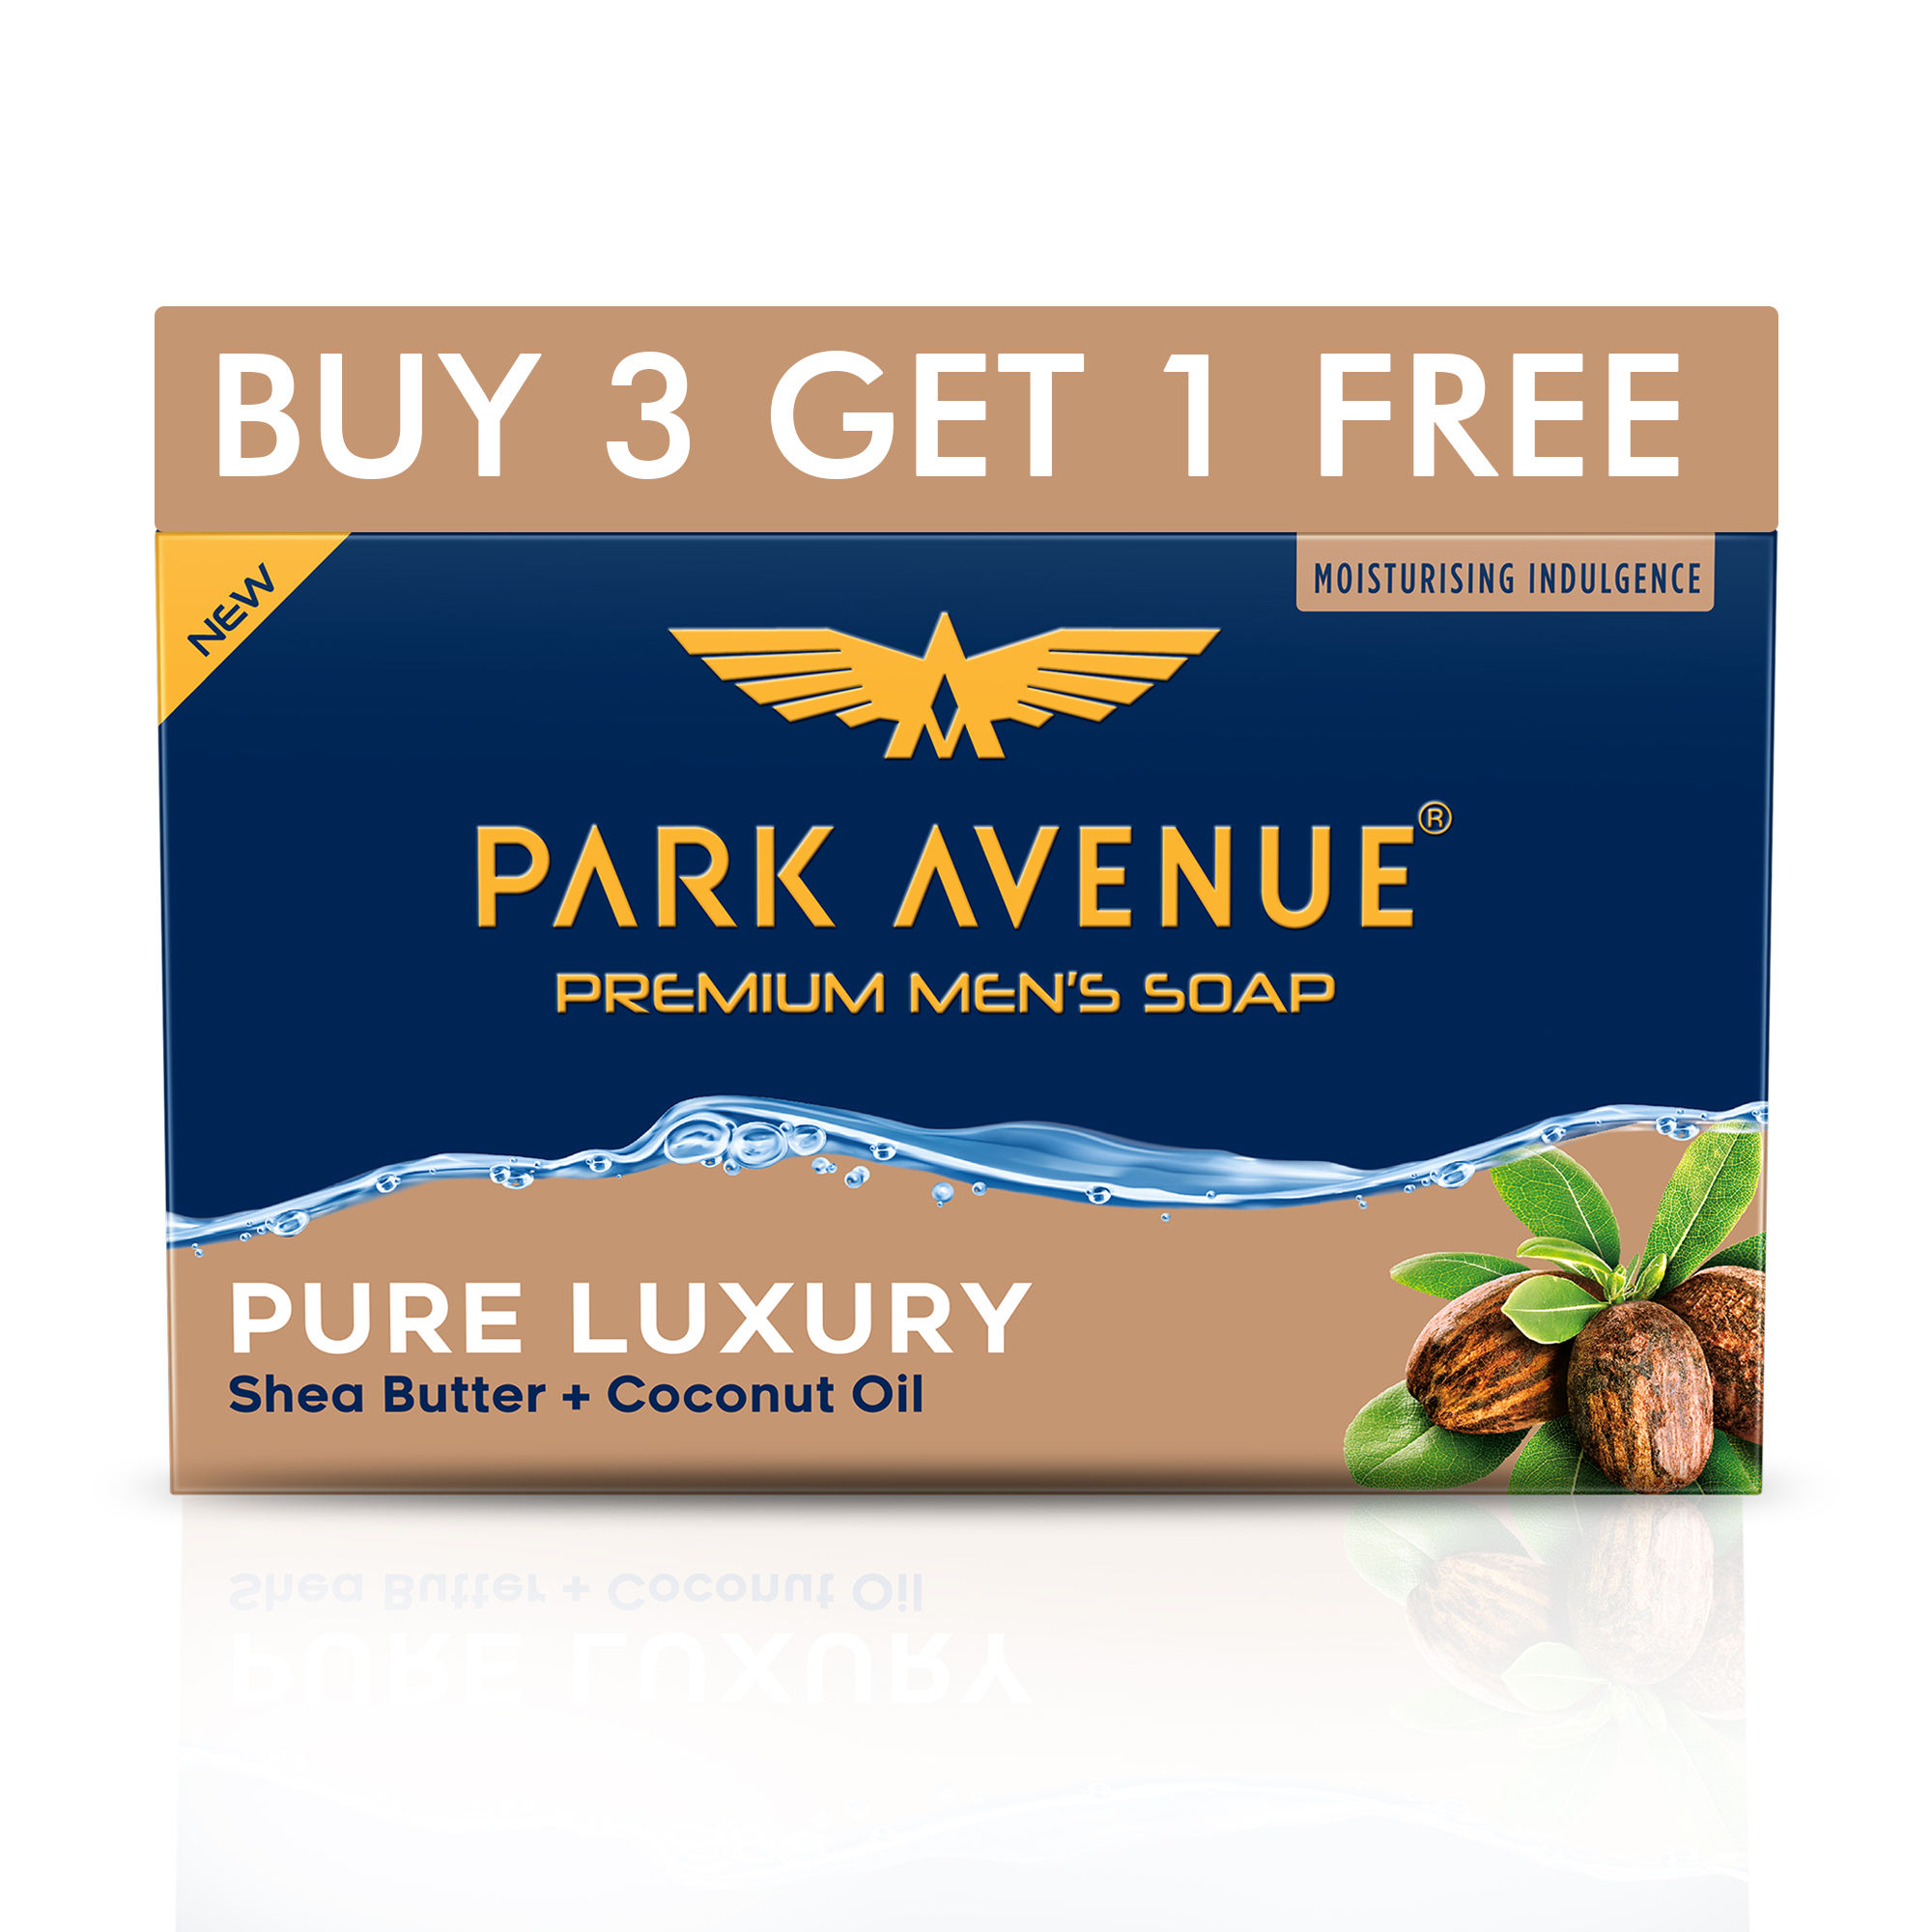 Park Avenue Premium Men's Soap Pure Luxury Shea Butter + Coconut Oil (Buy3 Get1 Free)